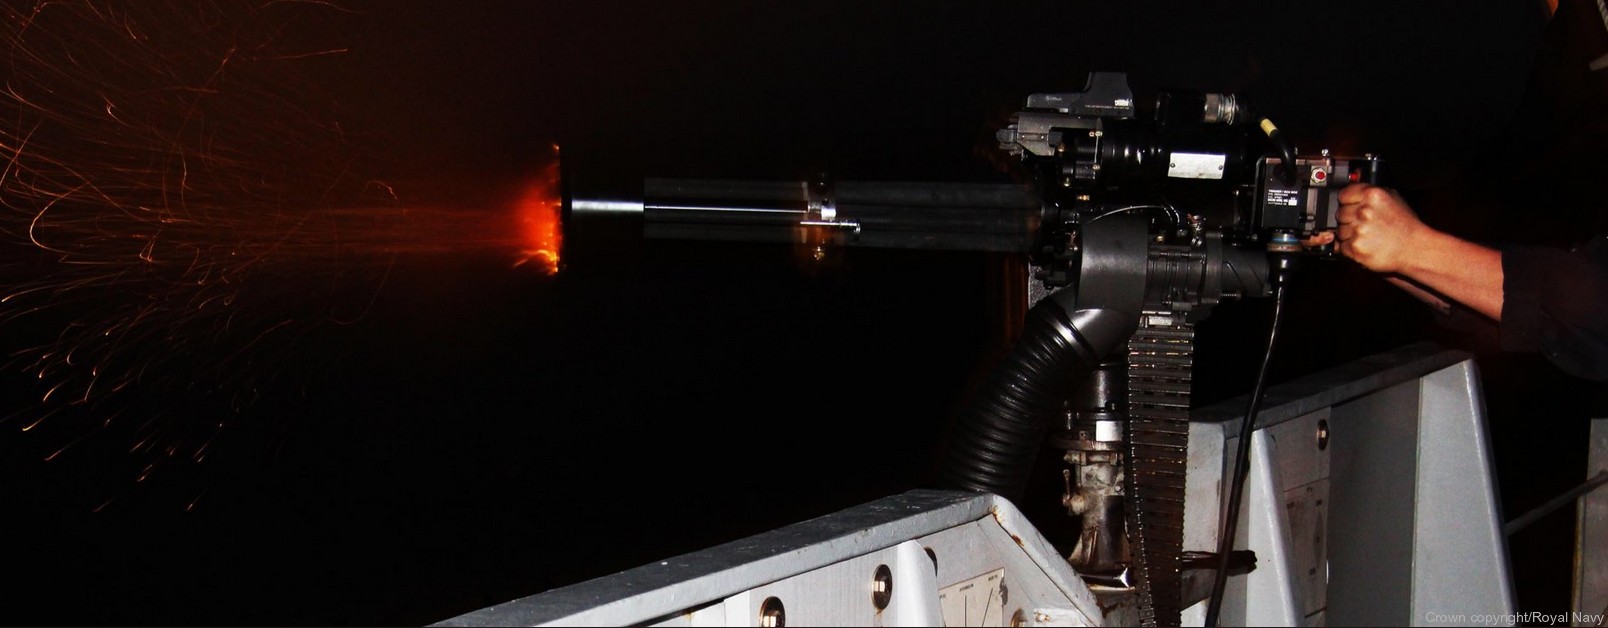 m134 rotary machine gun system six barreled minigun gatling 7,62mm gau-17 04